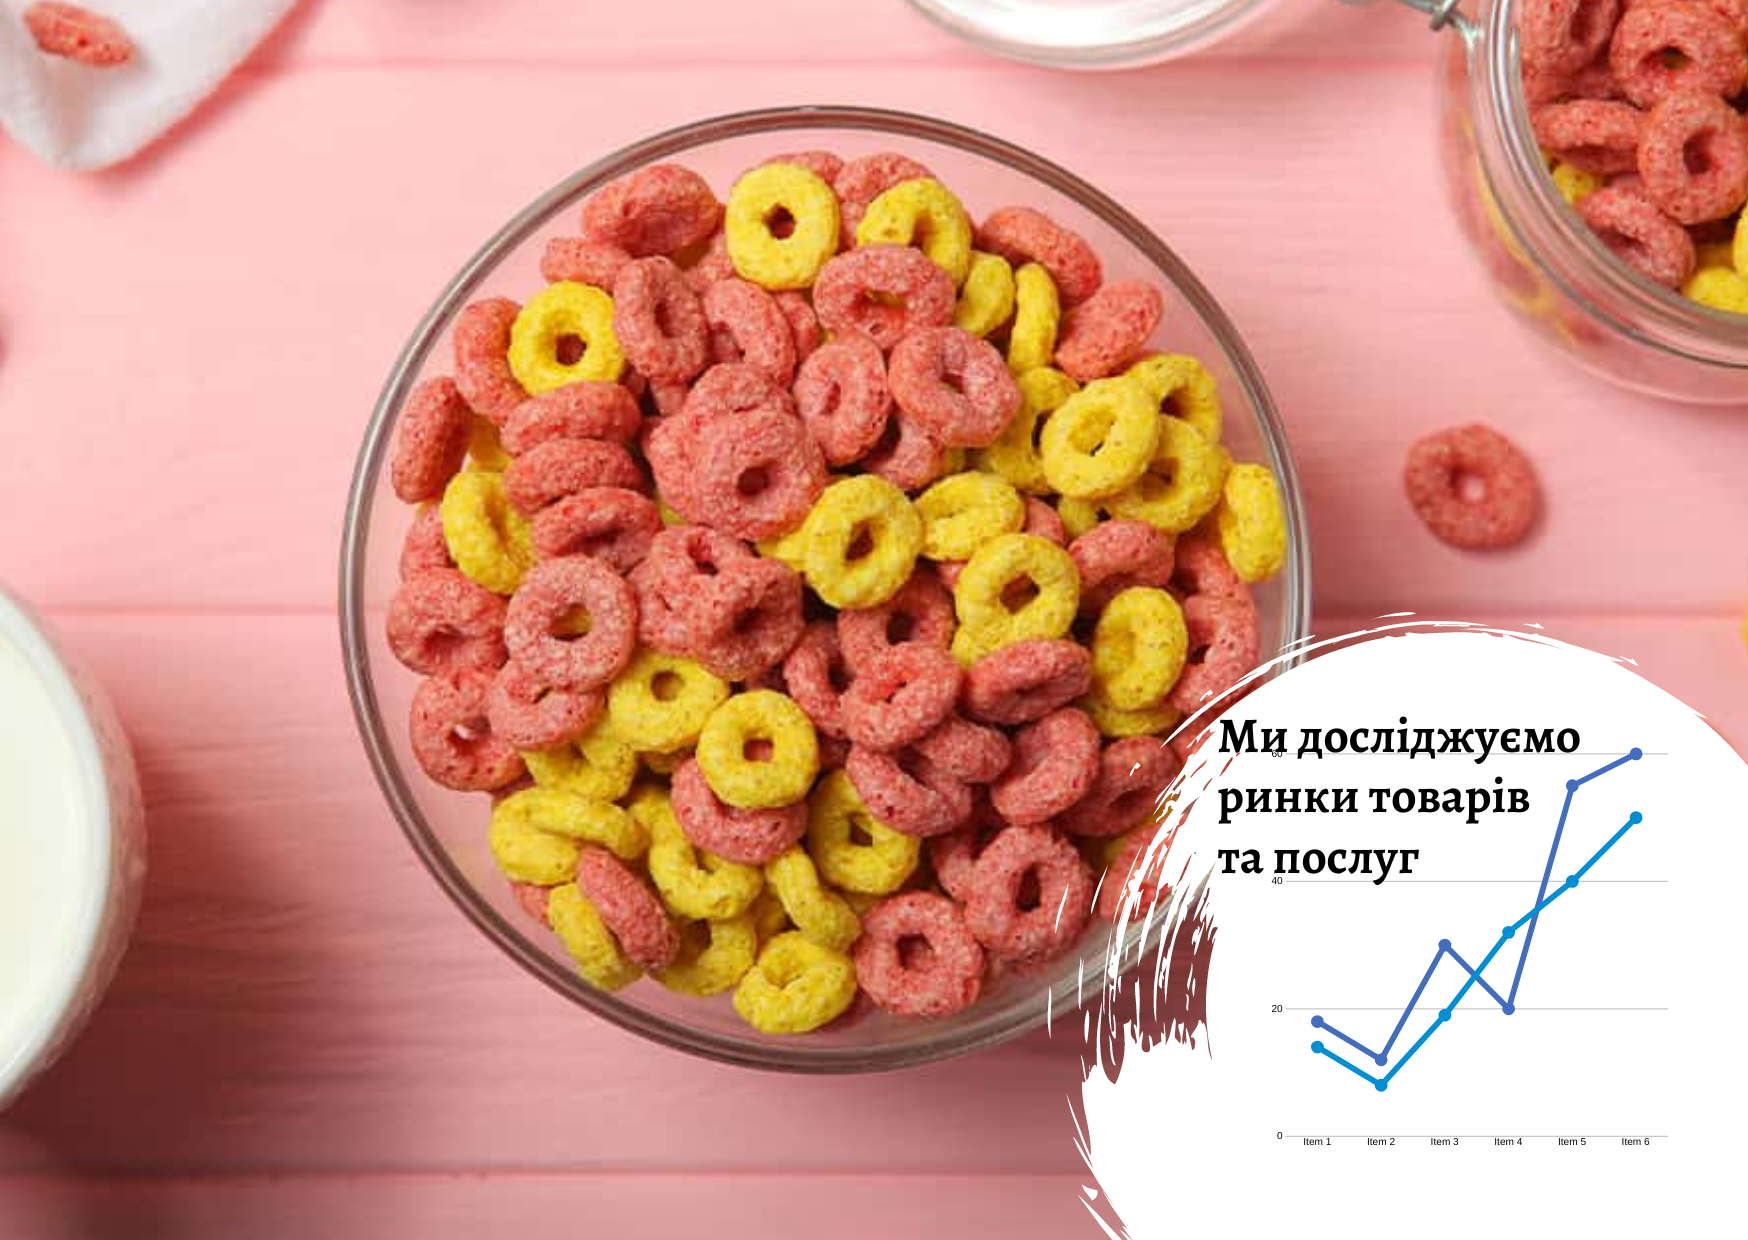 Ukrainian breakfast cereal market 